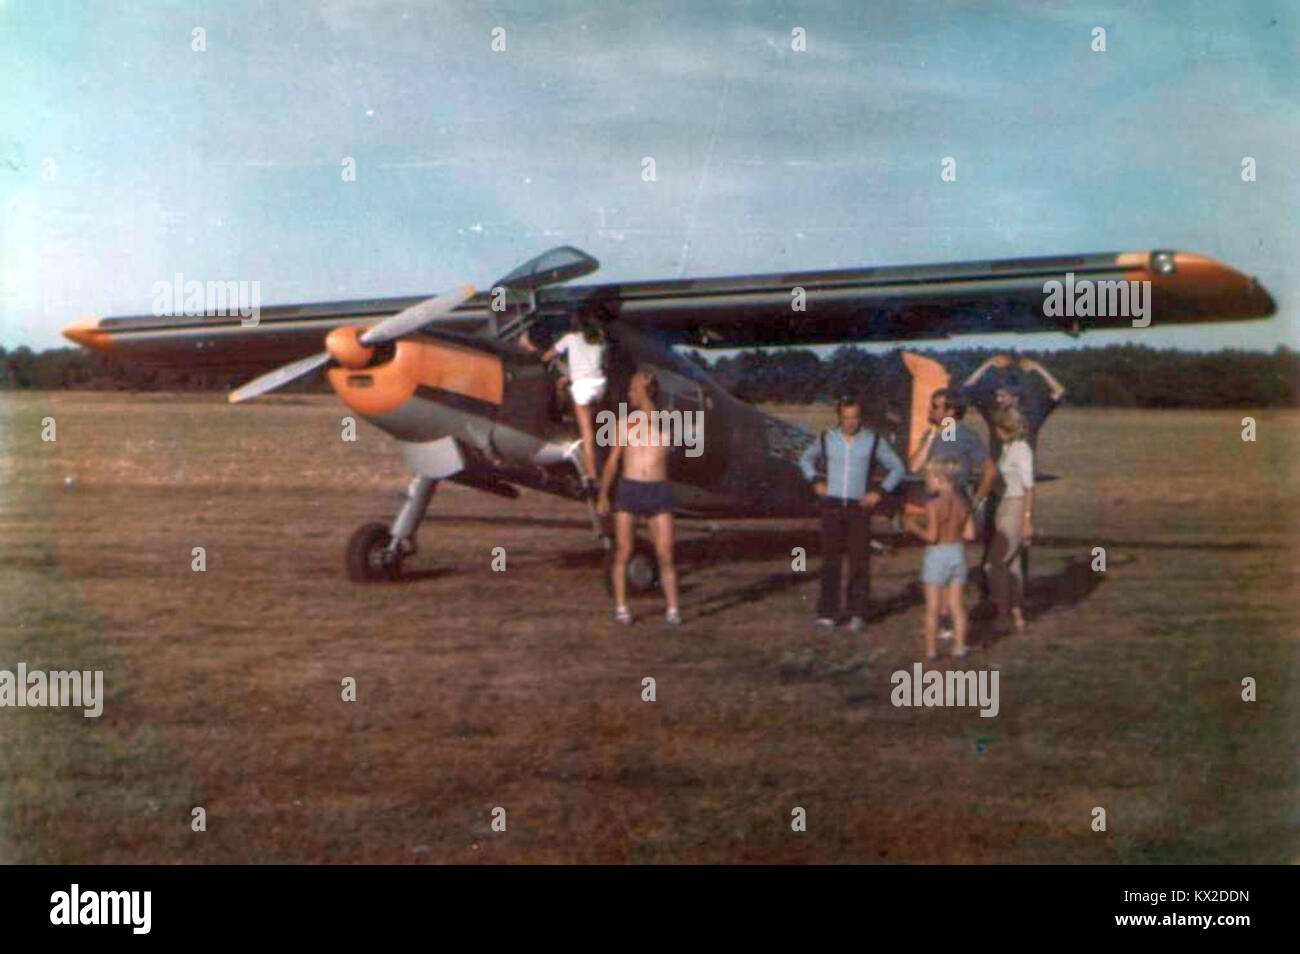 Dornier Do 27 Międzynarodowe Zawody Spadochronowe w celności lądowania – Szlezwik-Holsztyn 1983 (01) Stock Photo